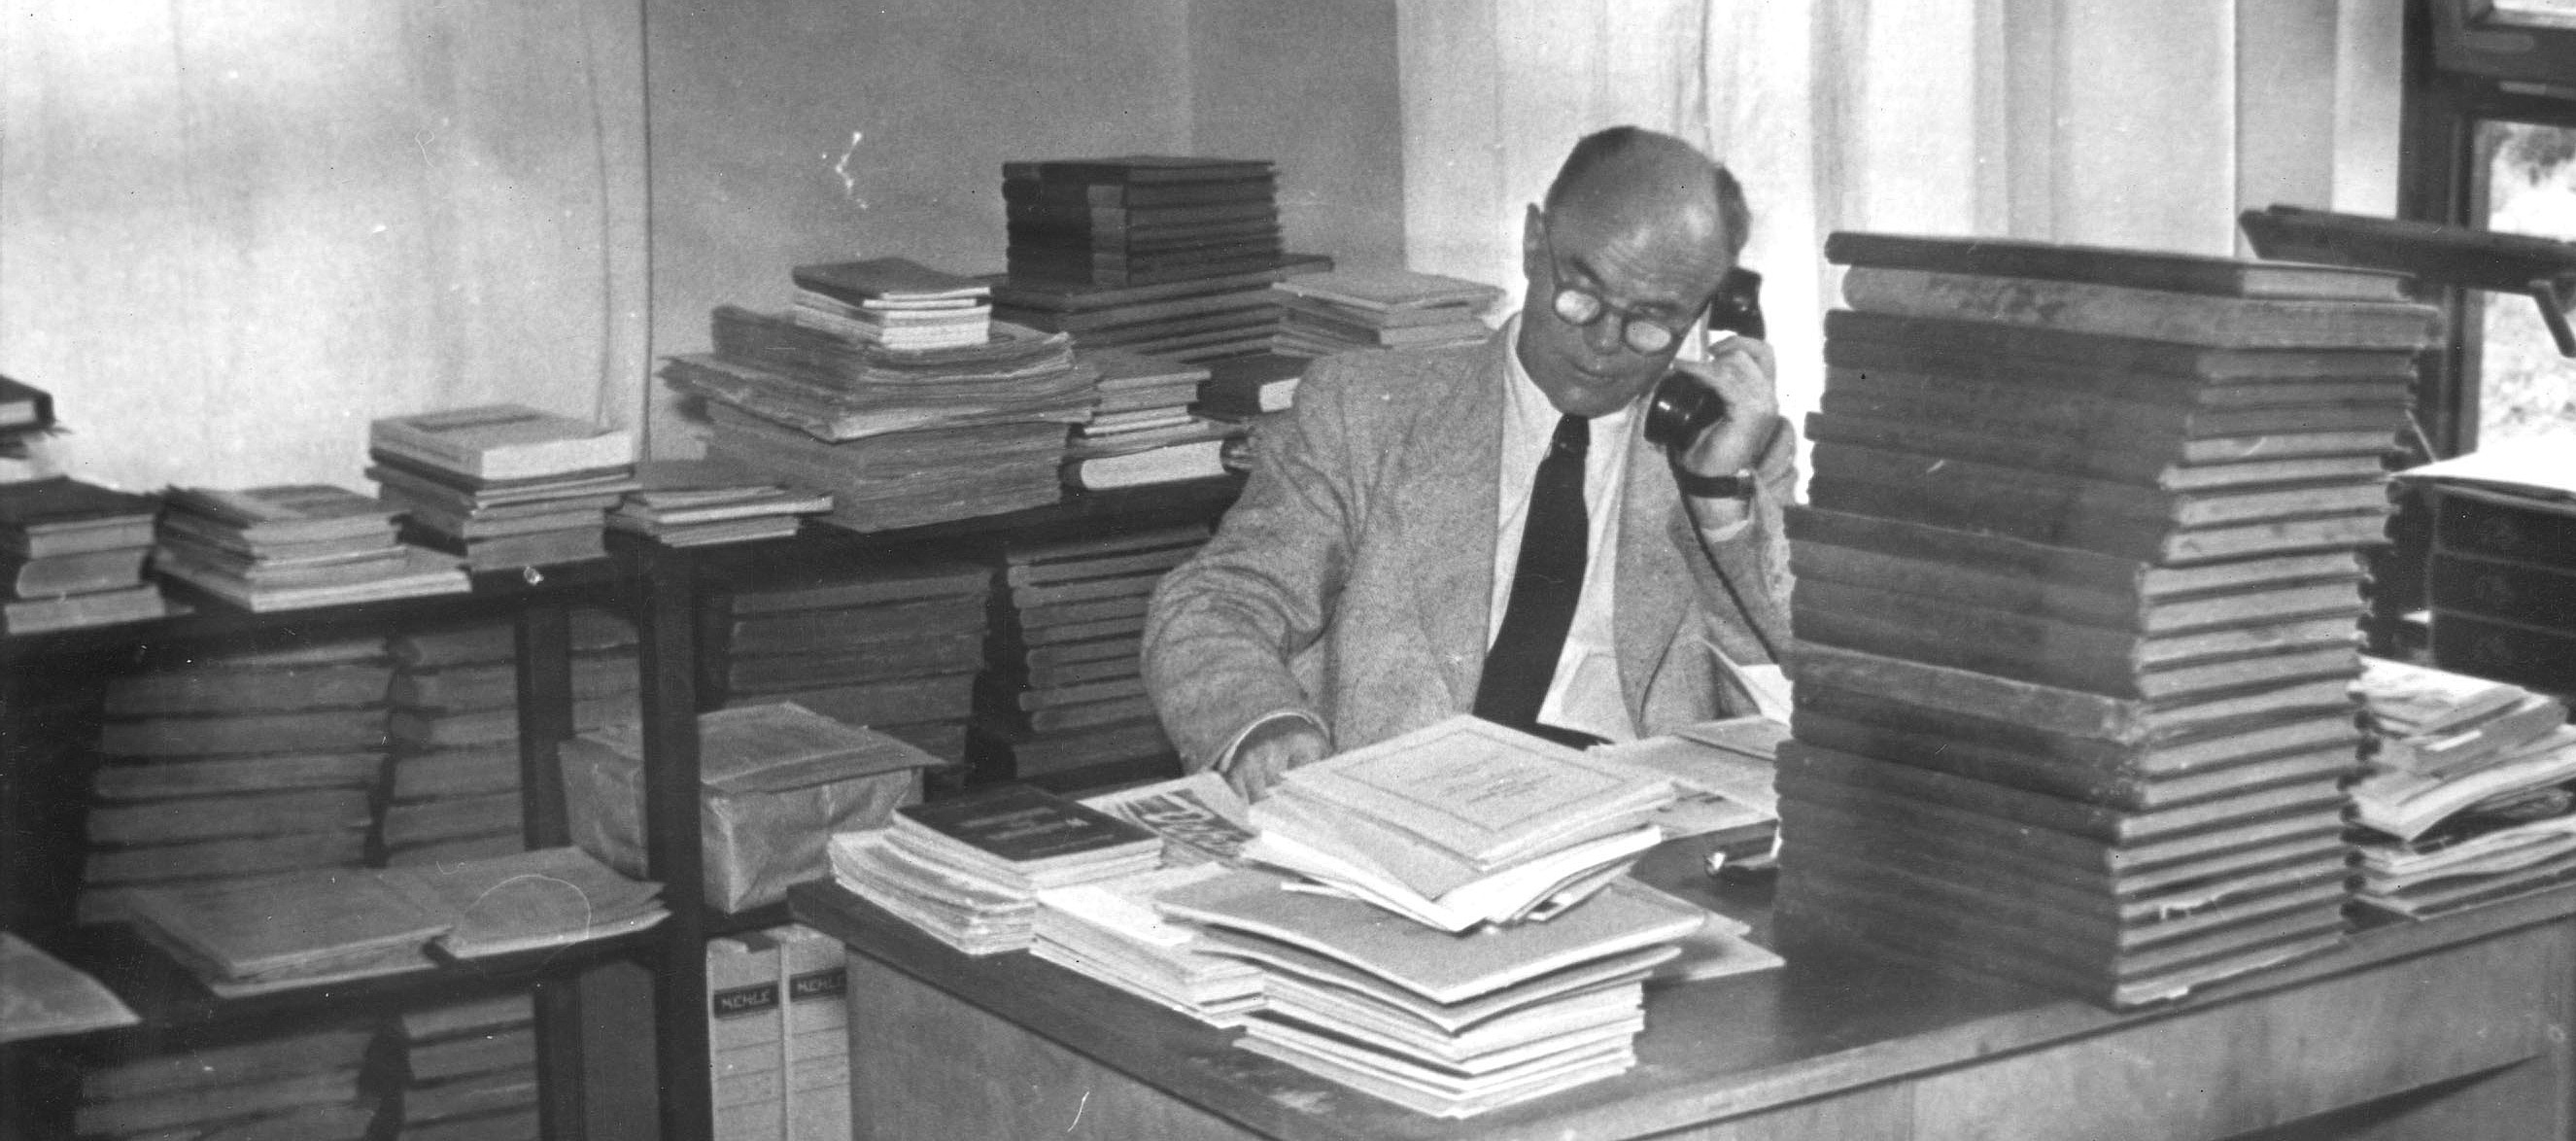 Rudolf Rothe, Herr mit Brille, telefoniert mit einem Kabeltelefon, hinter einem Schreibtisch sitzend, umgeben von hohen Bücherstapeln